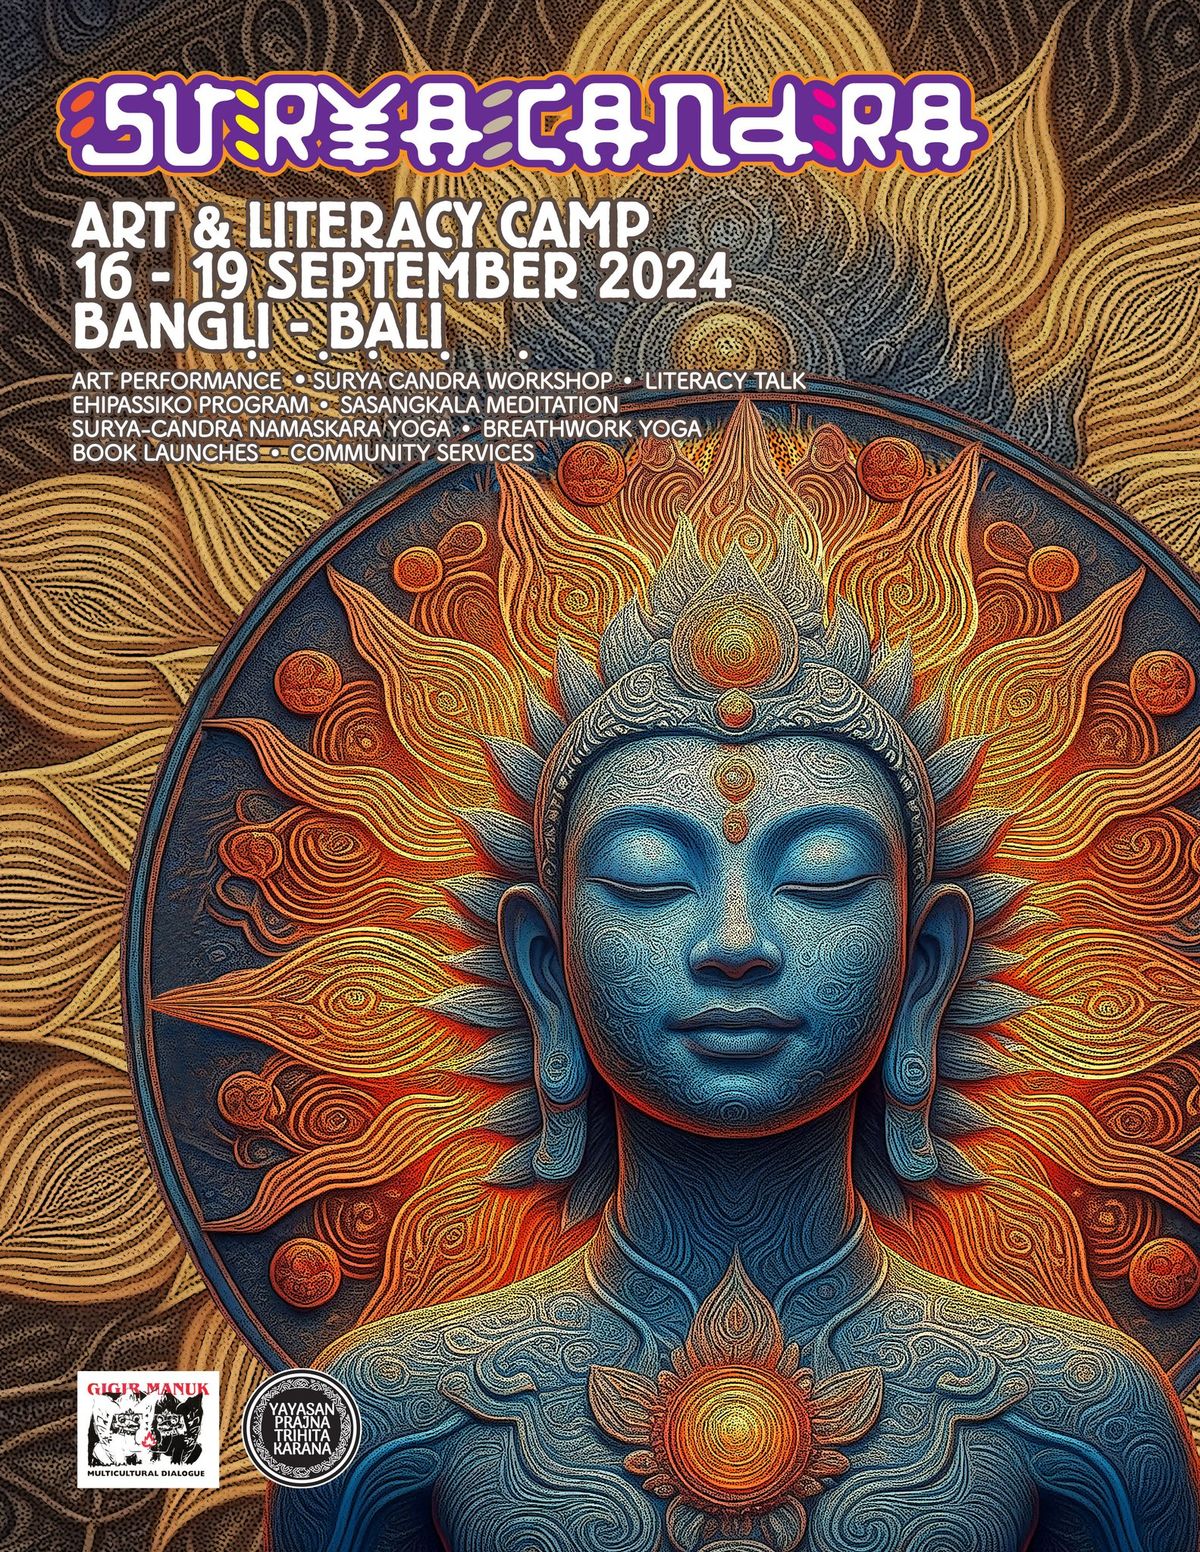 Suryacandra Art & Literacy Camp 2024